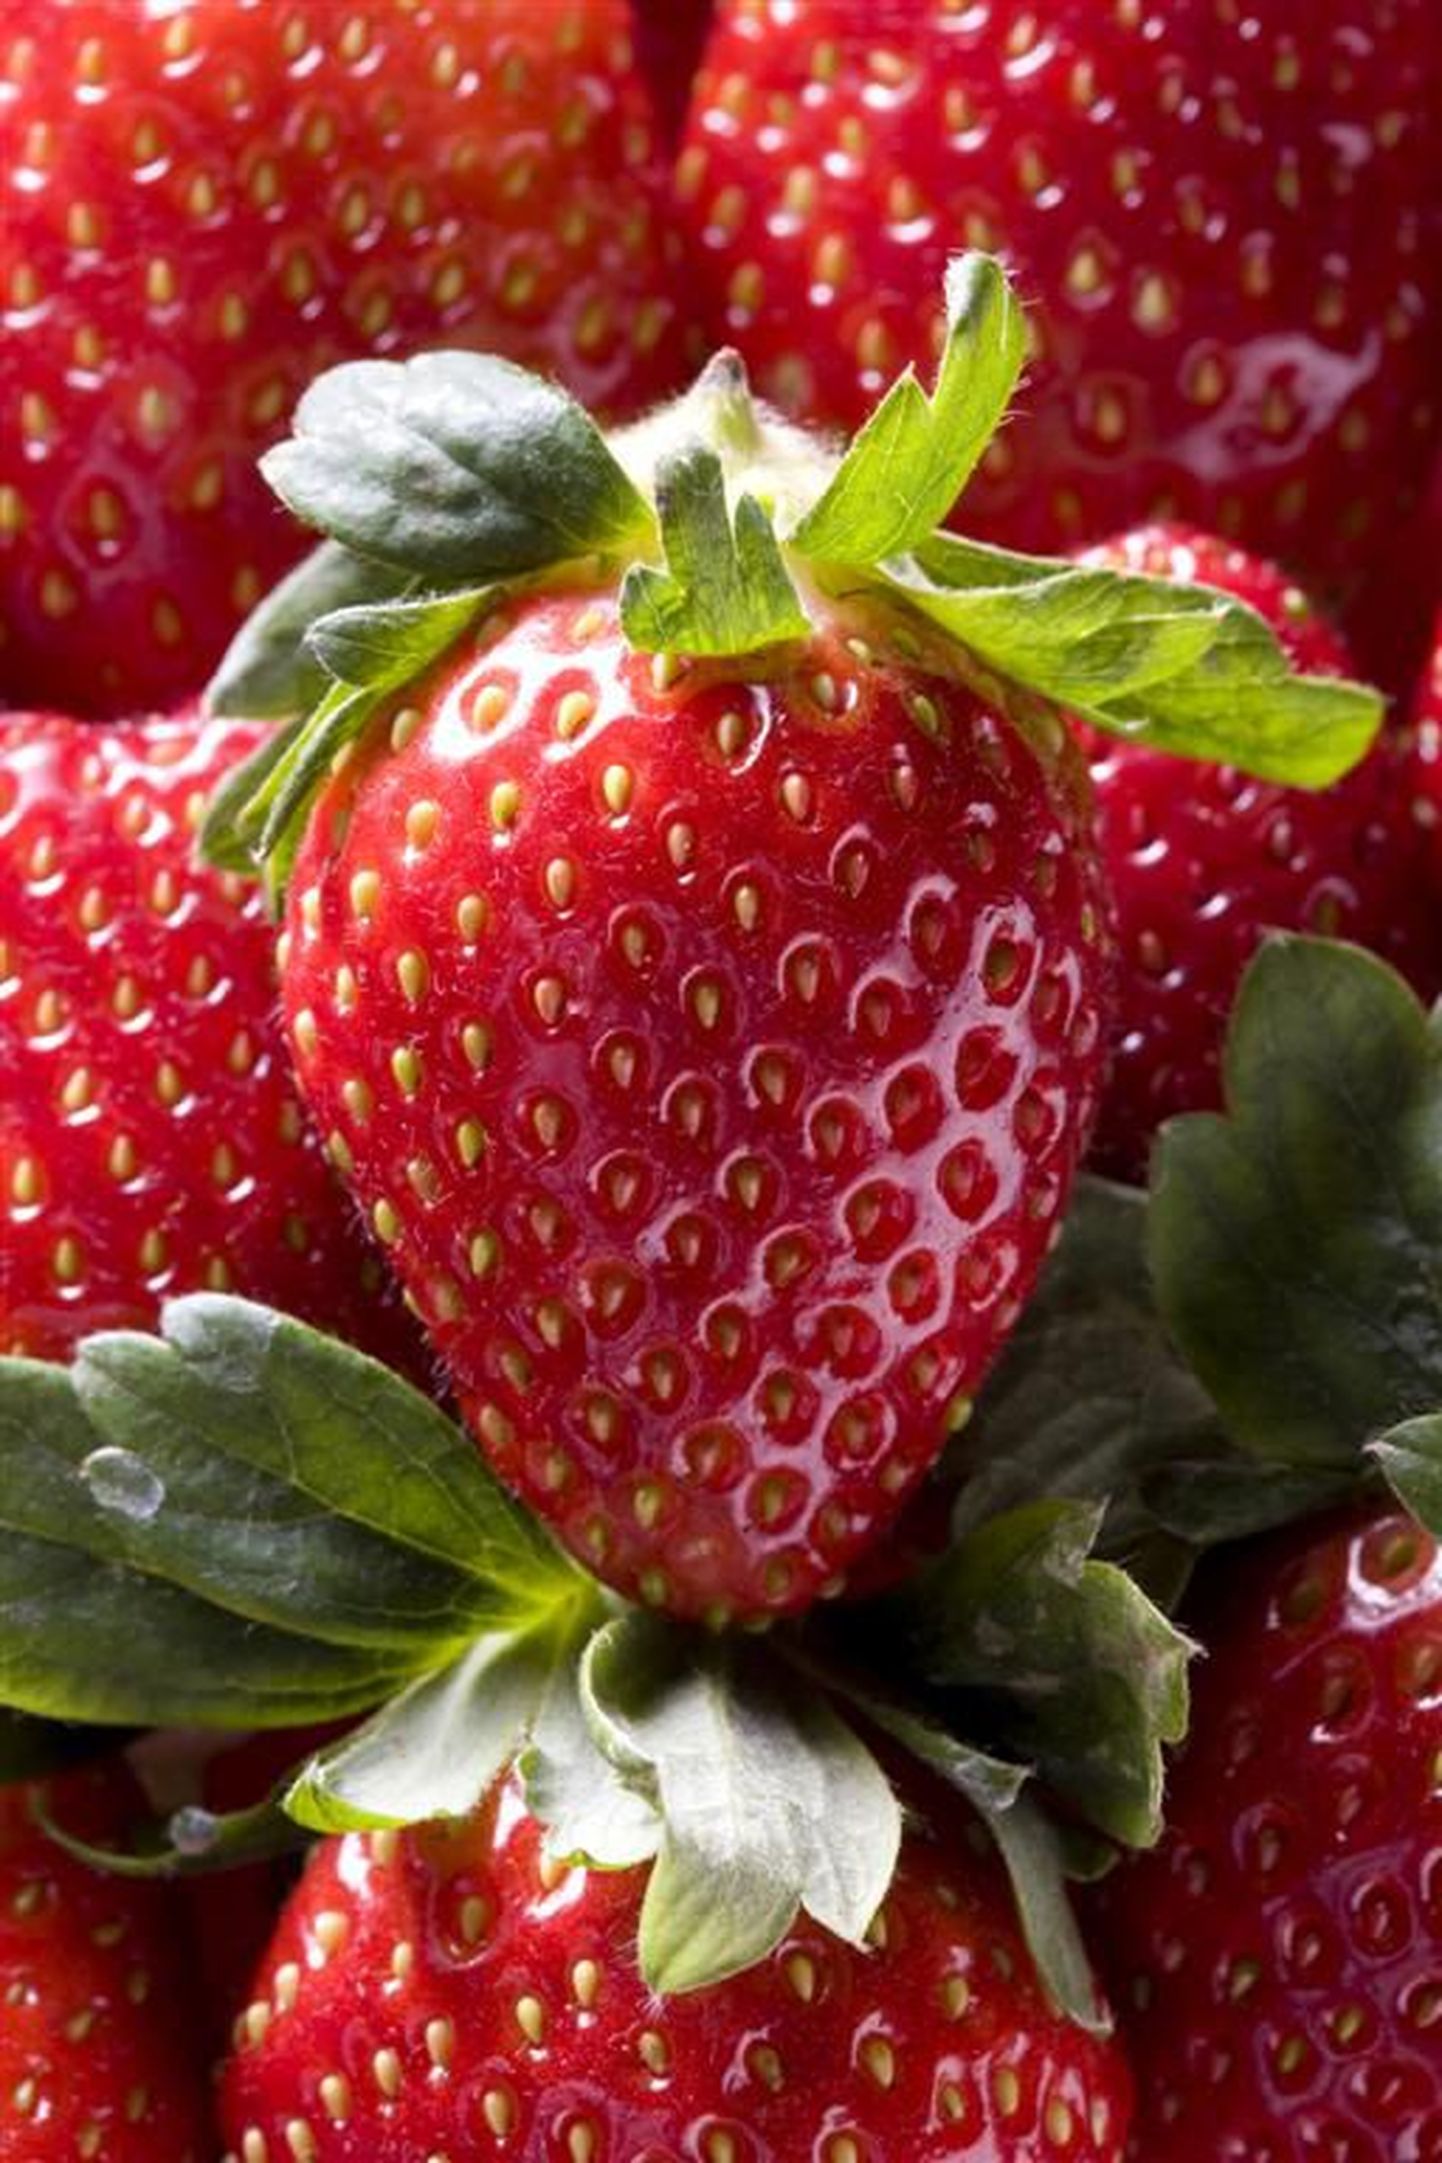 Esimesed rootsi maasikad on valmis.